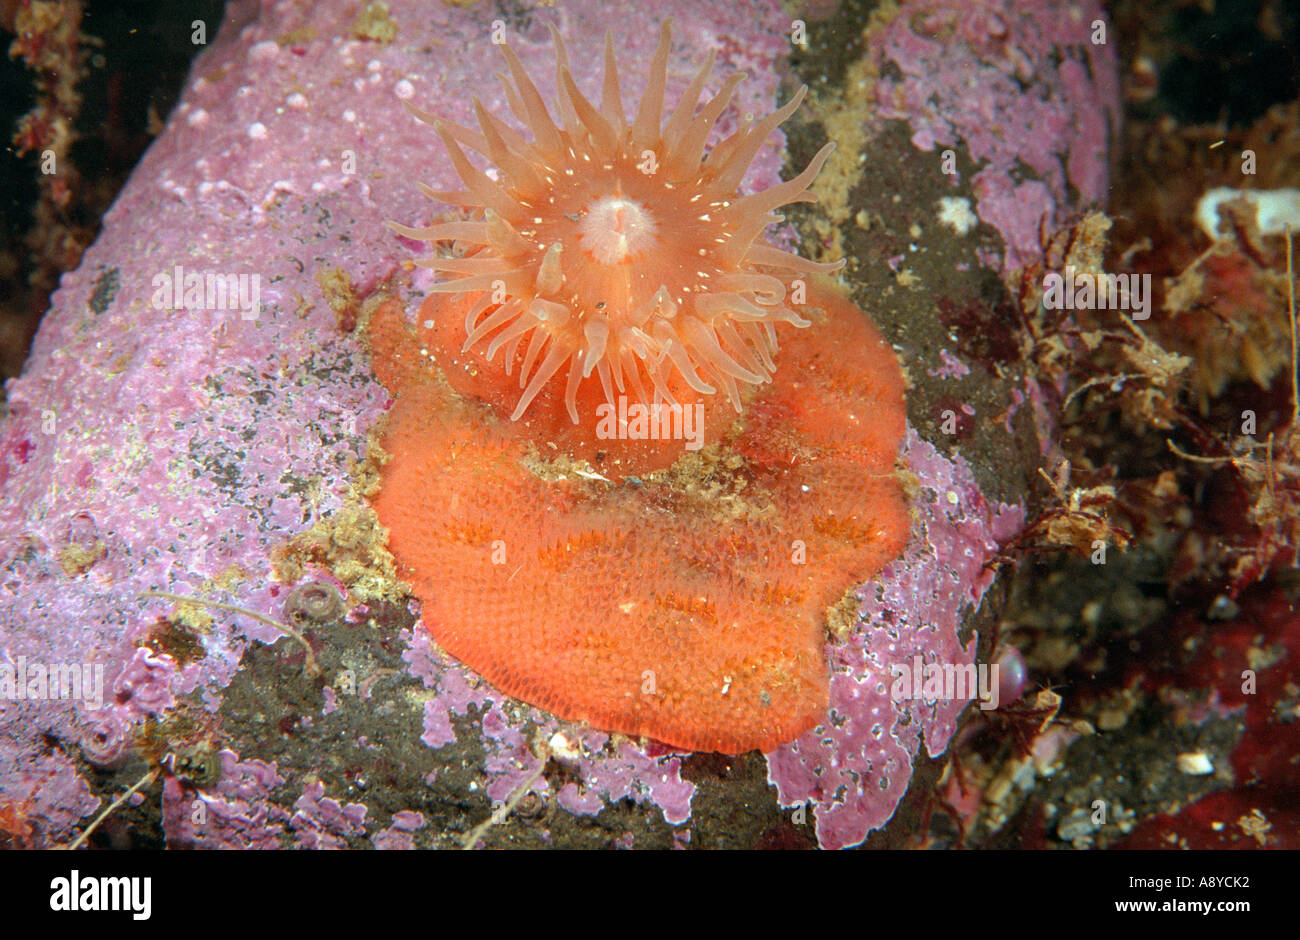 Orange sea anemone Stomphia coccinea on stone covered by red coralline algae, orange Bryozoa colony. Underwater, North Pacific Stock Photo